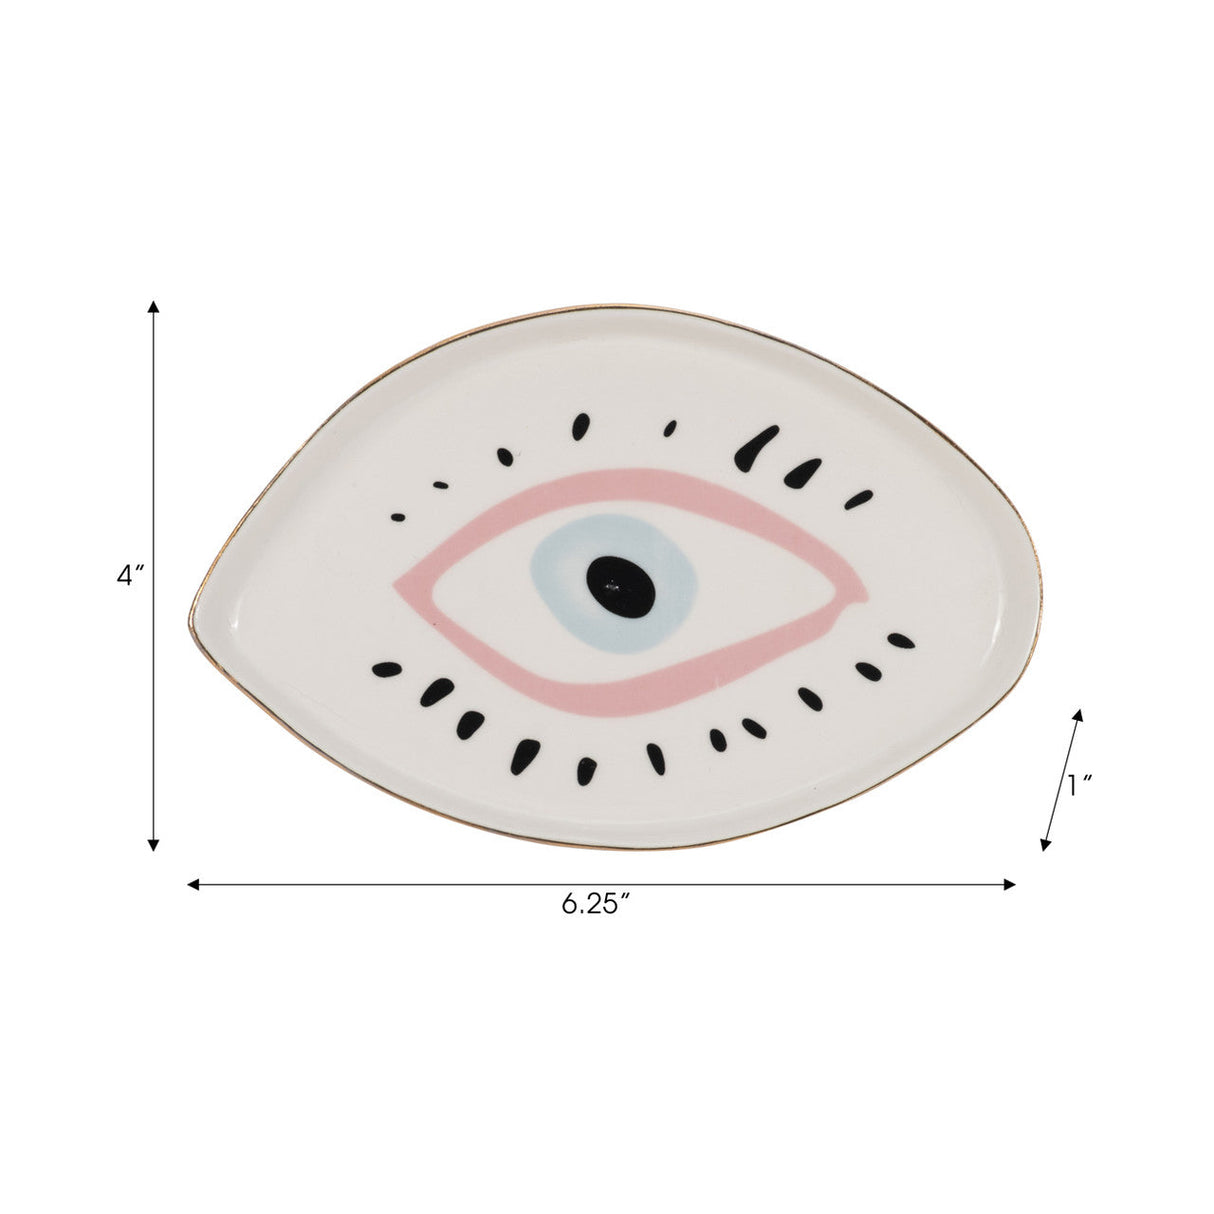 6" Eye Trinket Tray, Multi